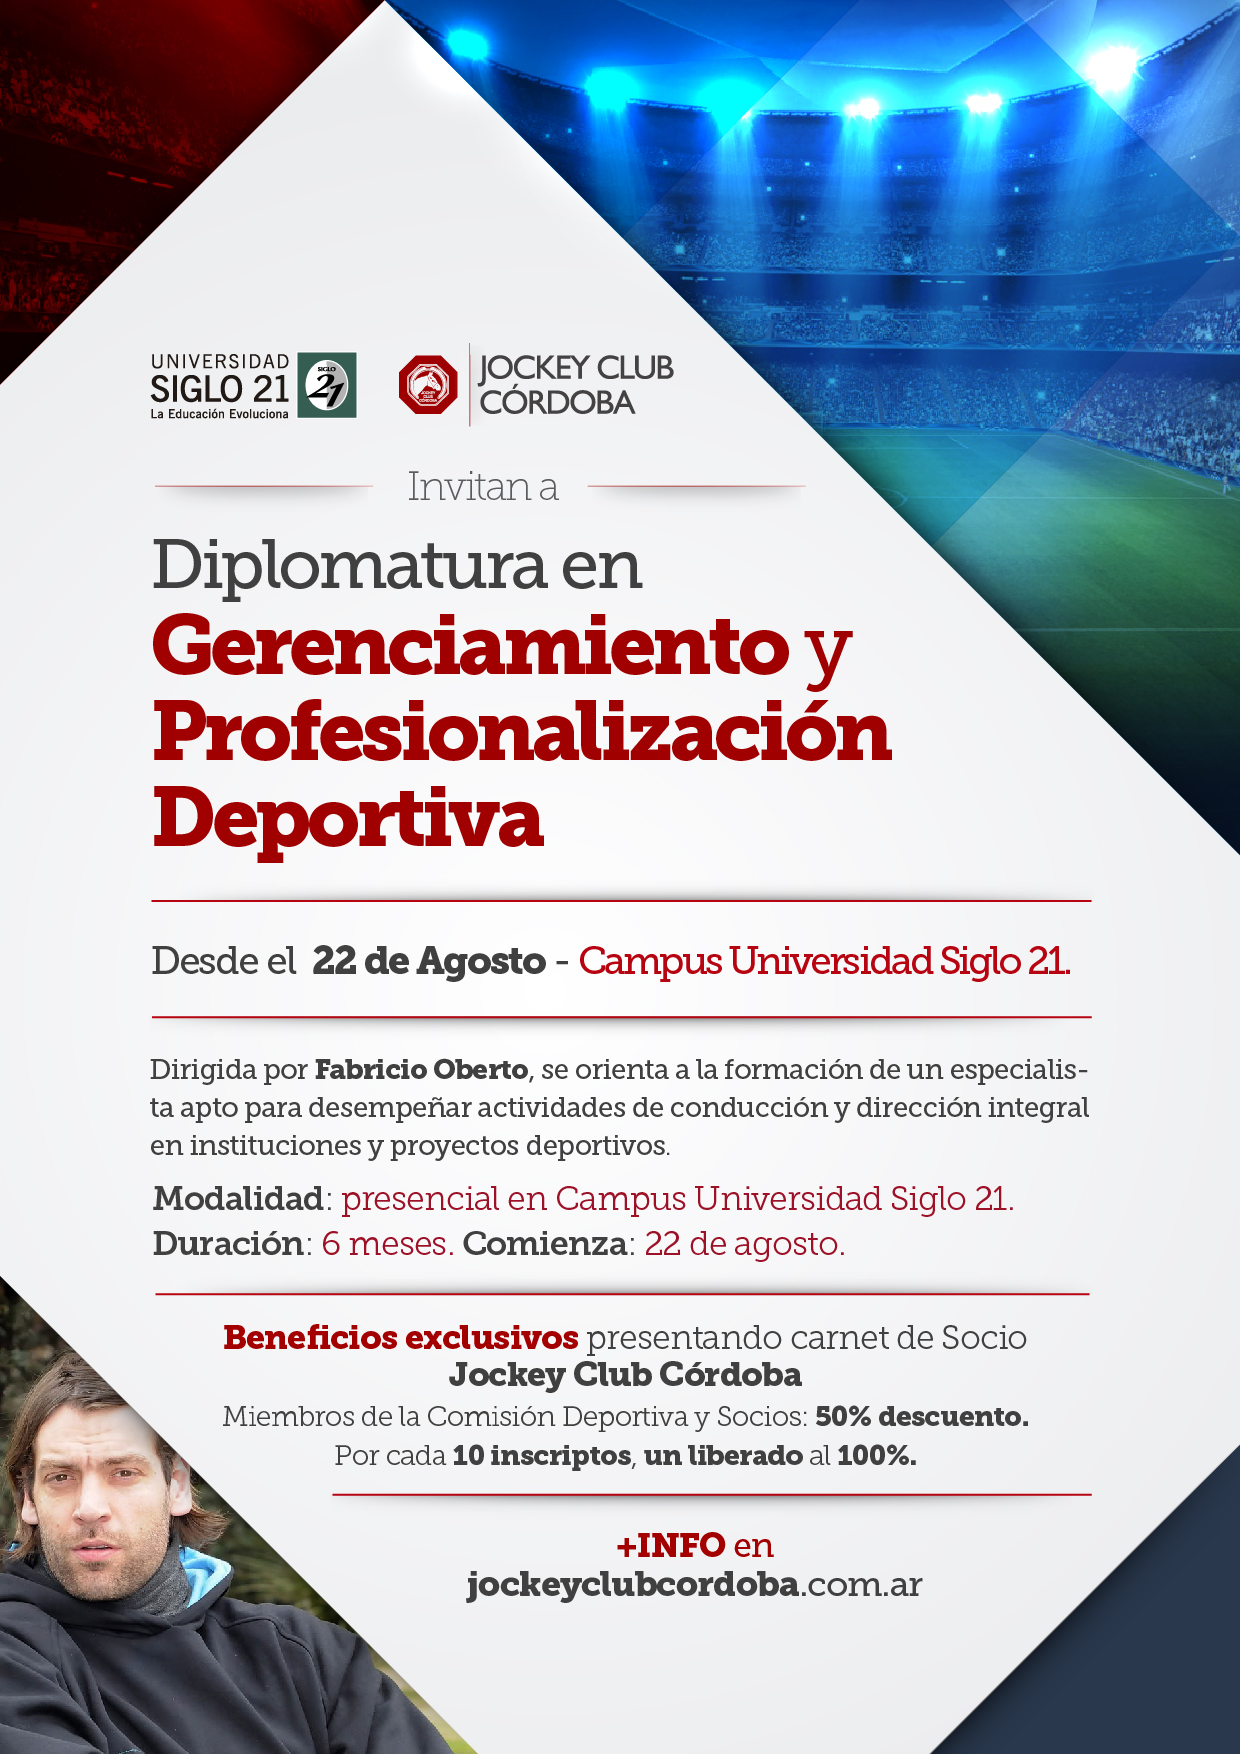 Flyer - Siglo21-Diplomatura Gerenciamiento y Profesionalización deportiva-01